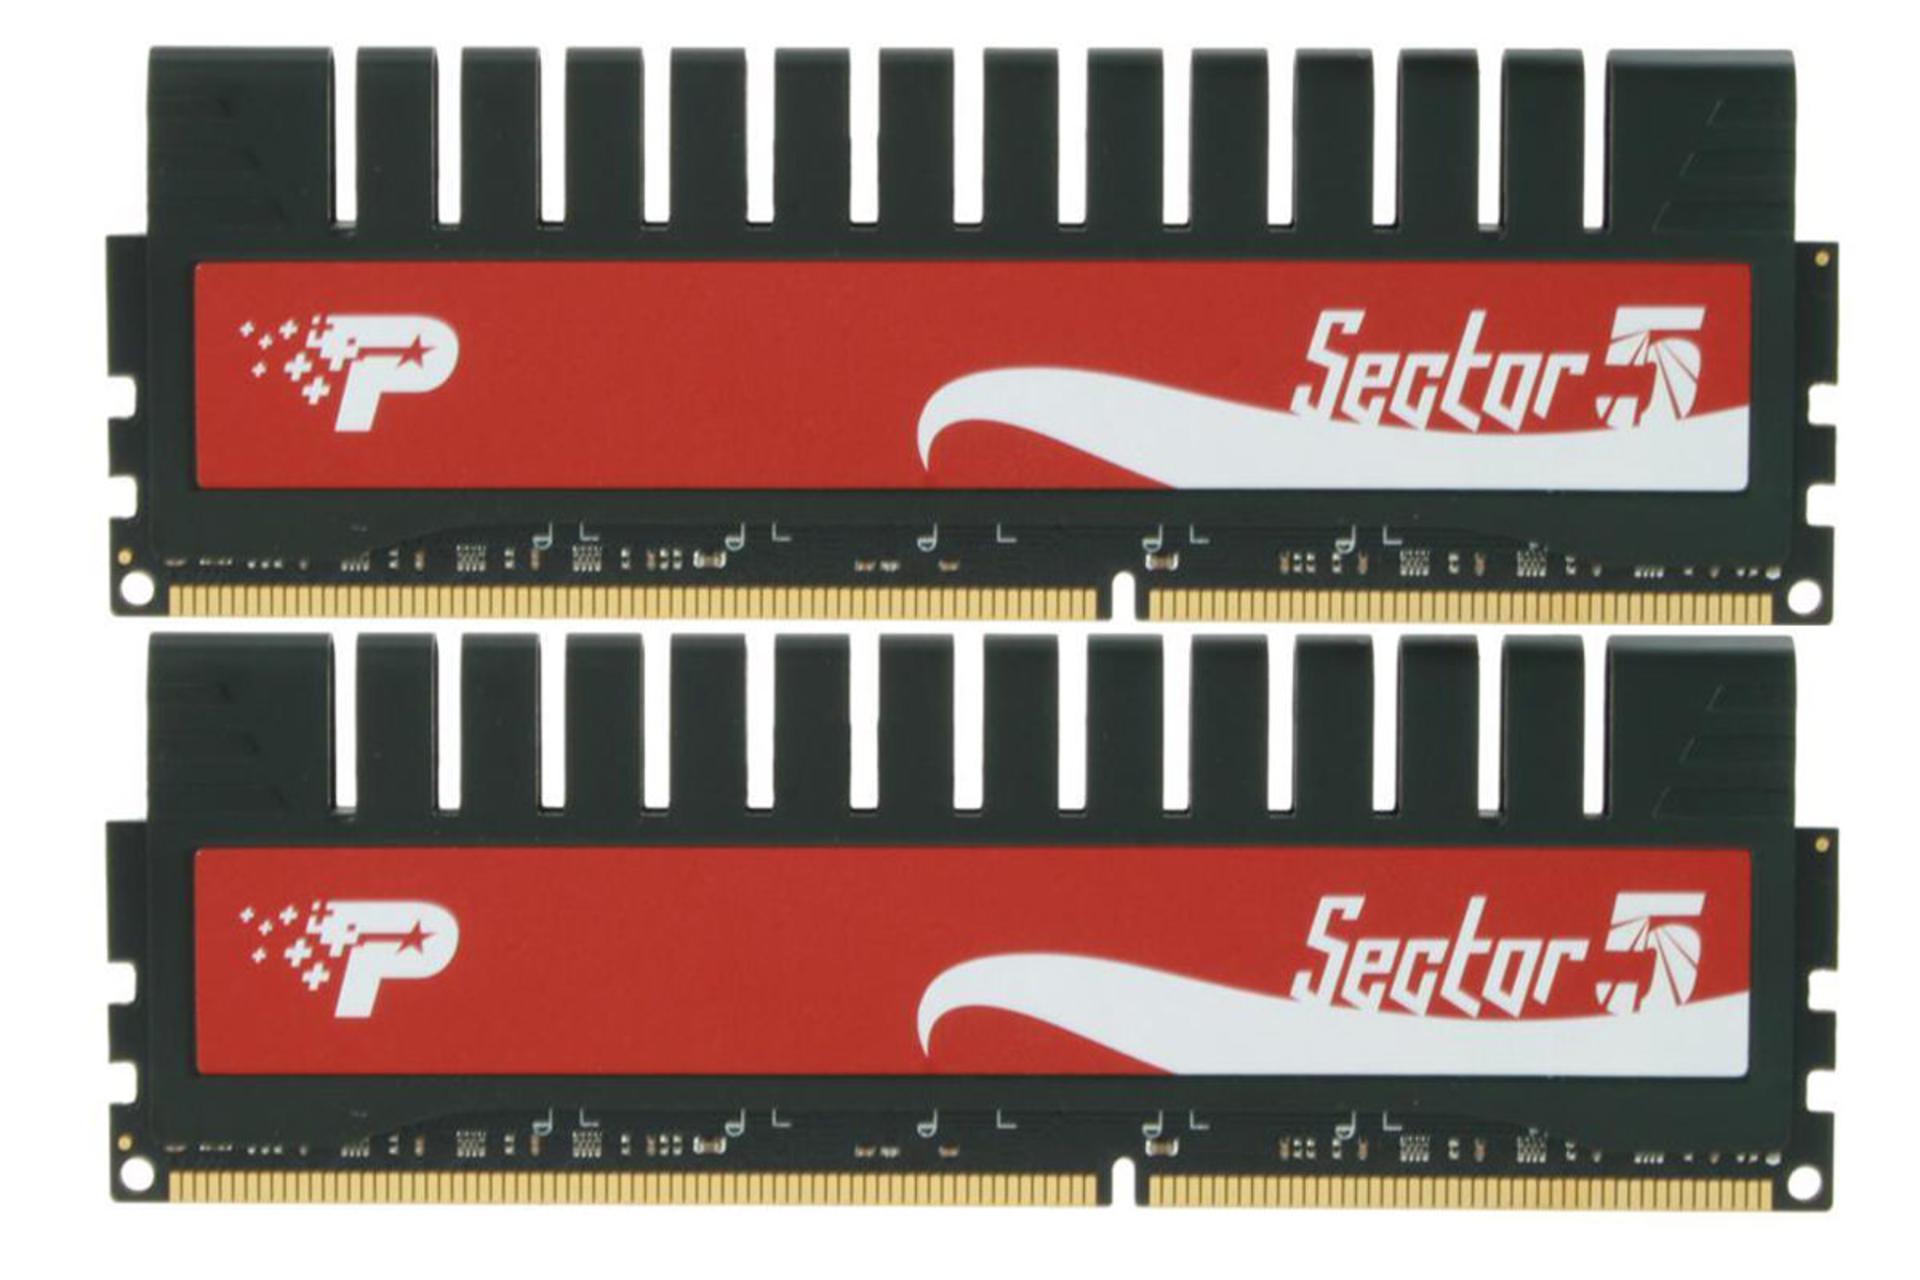 افظه رم پاتریوت SECTOR 5 ظرفیت 8 (2x4) گیگابایت از نوع DDR3-1333